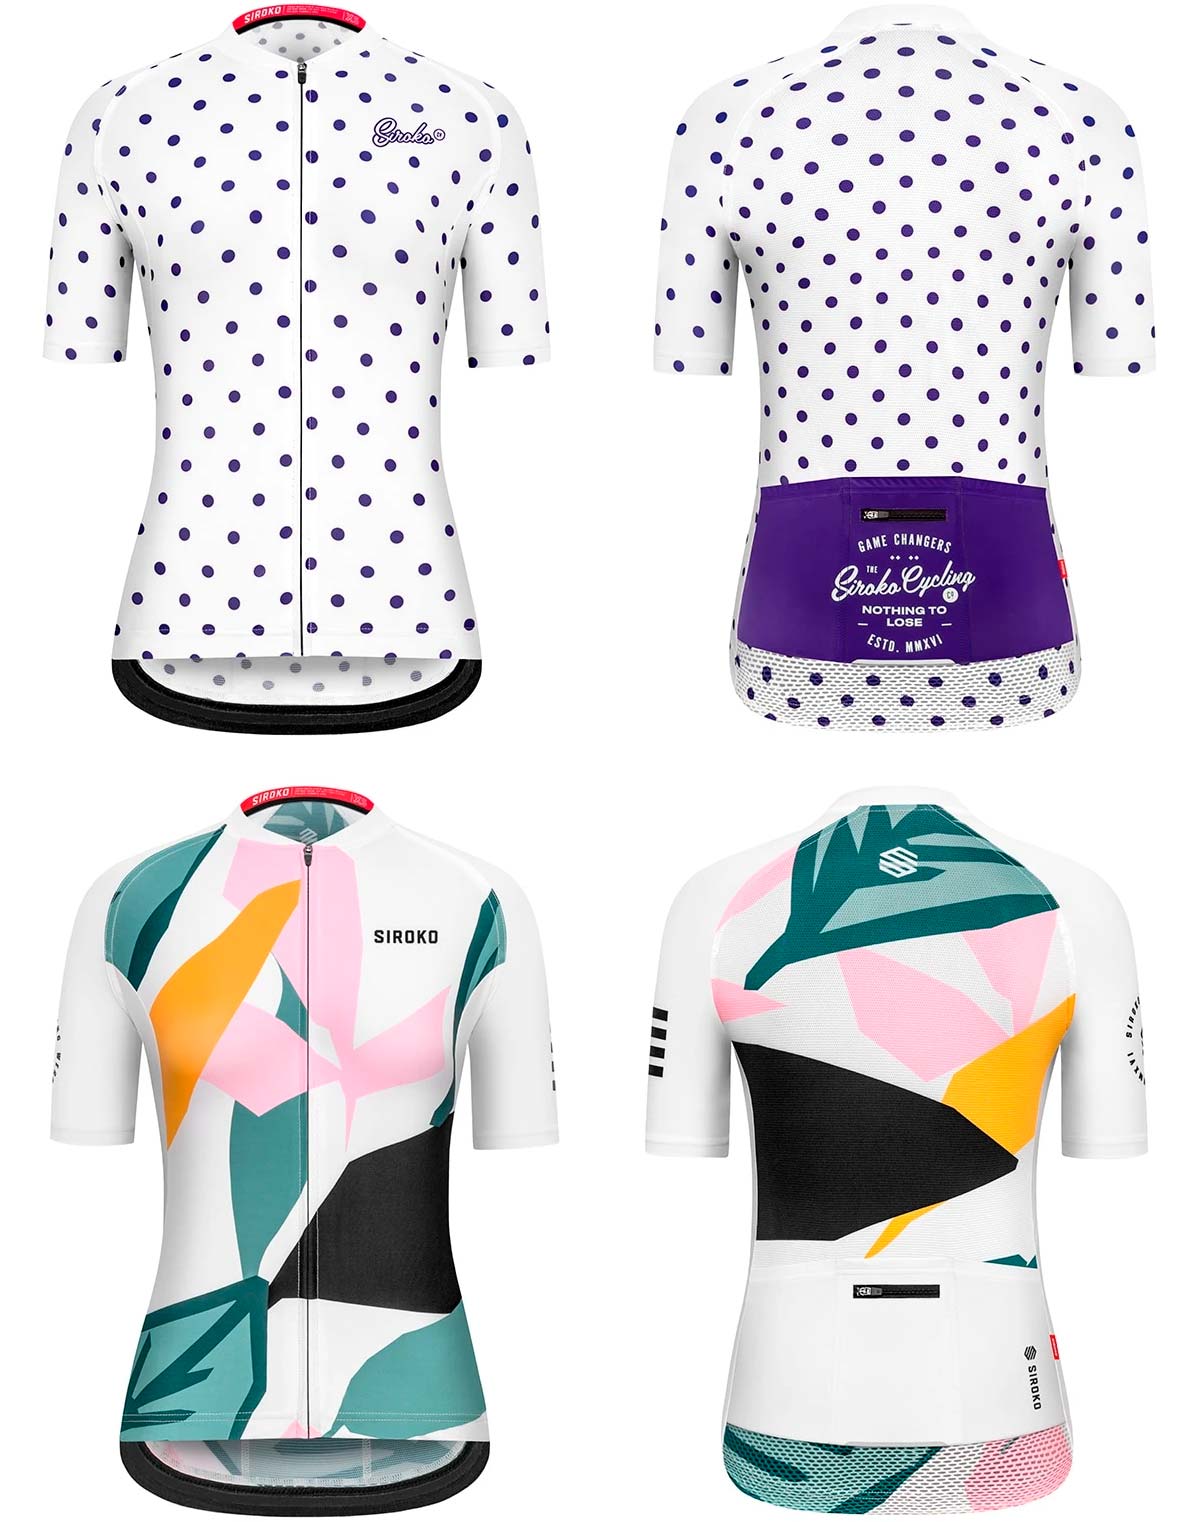 En TodoMountainBike: Siroko presenta sus primeros maillots de ciclismo específicos para mujer